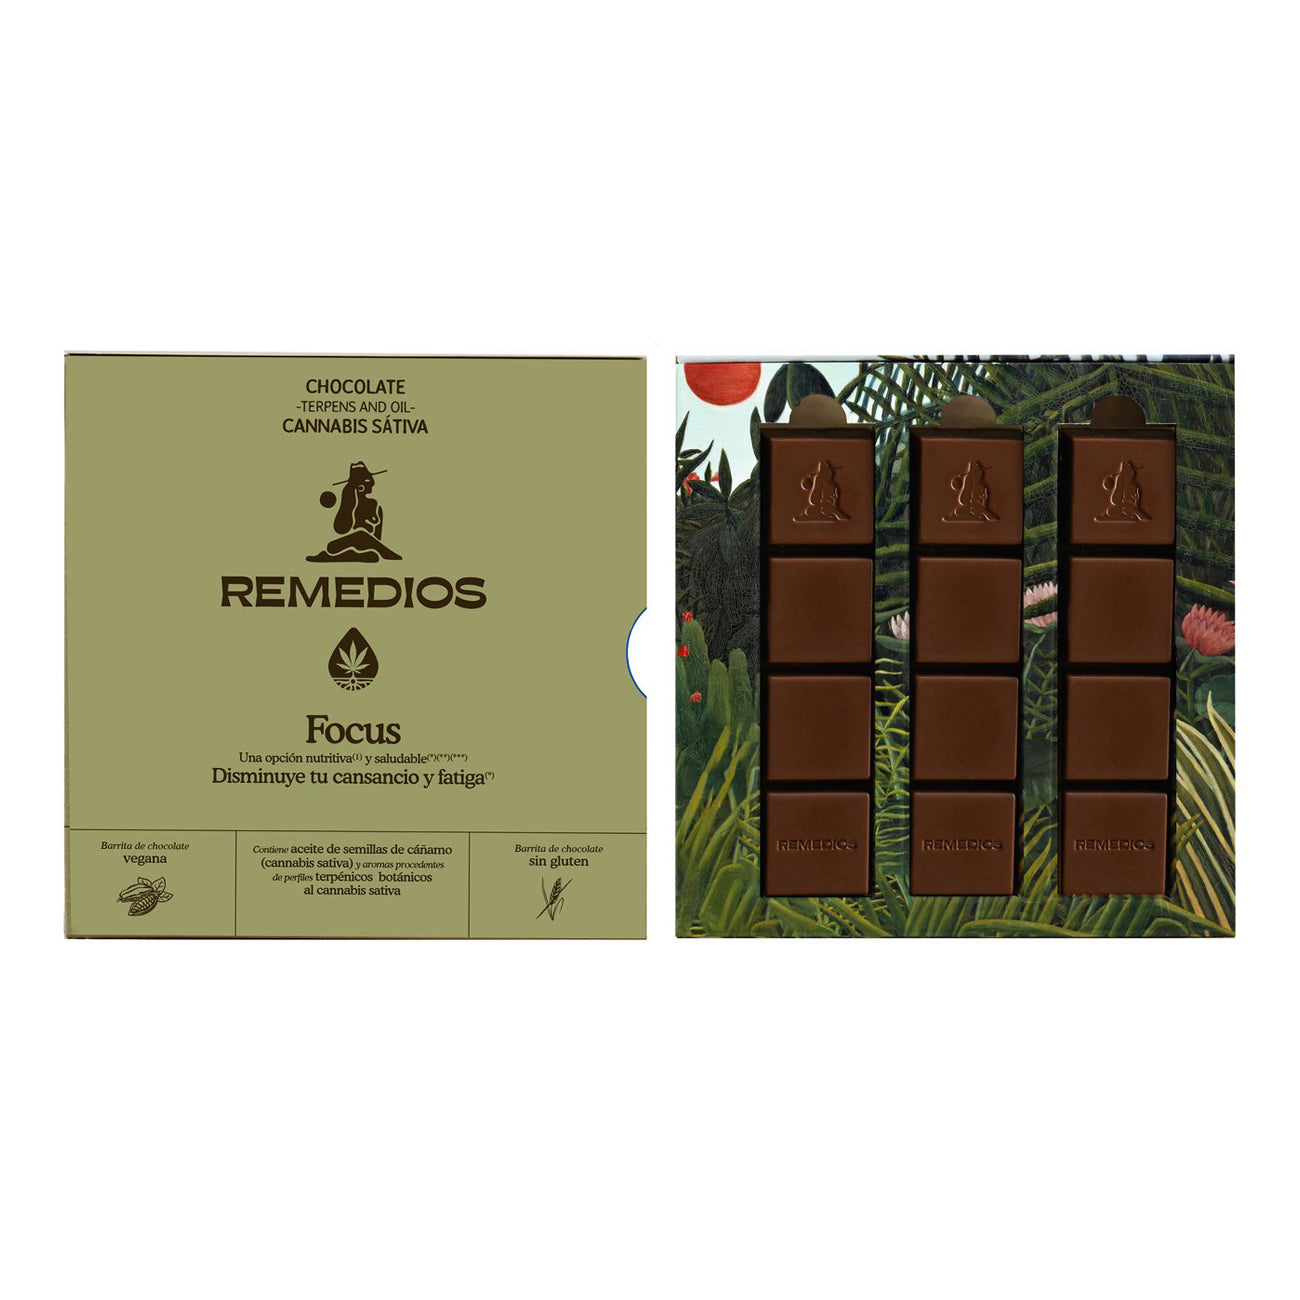 Chocolate Remedios - Focus